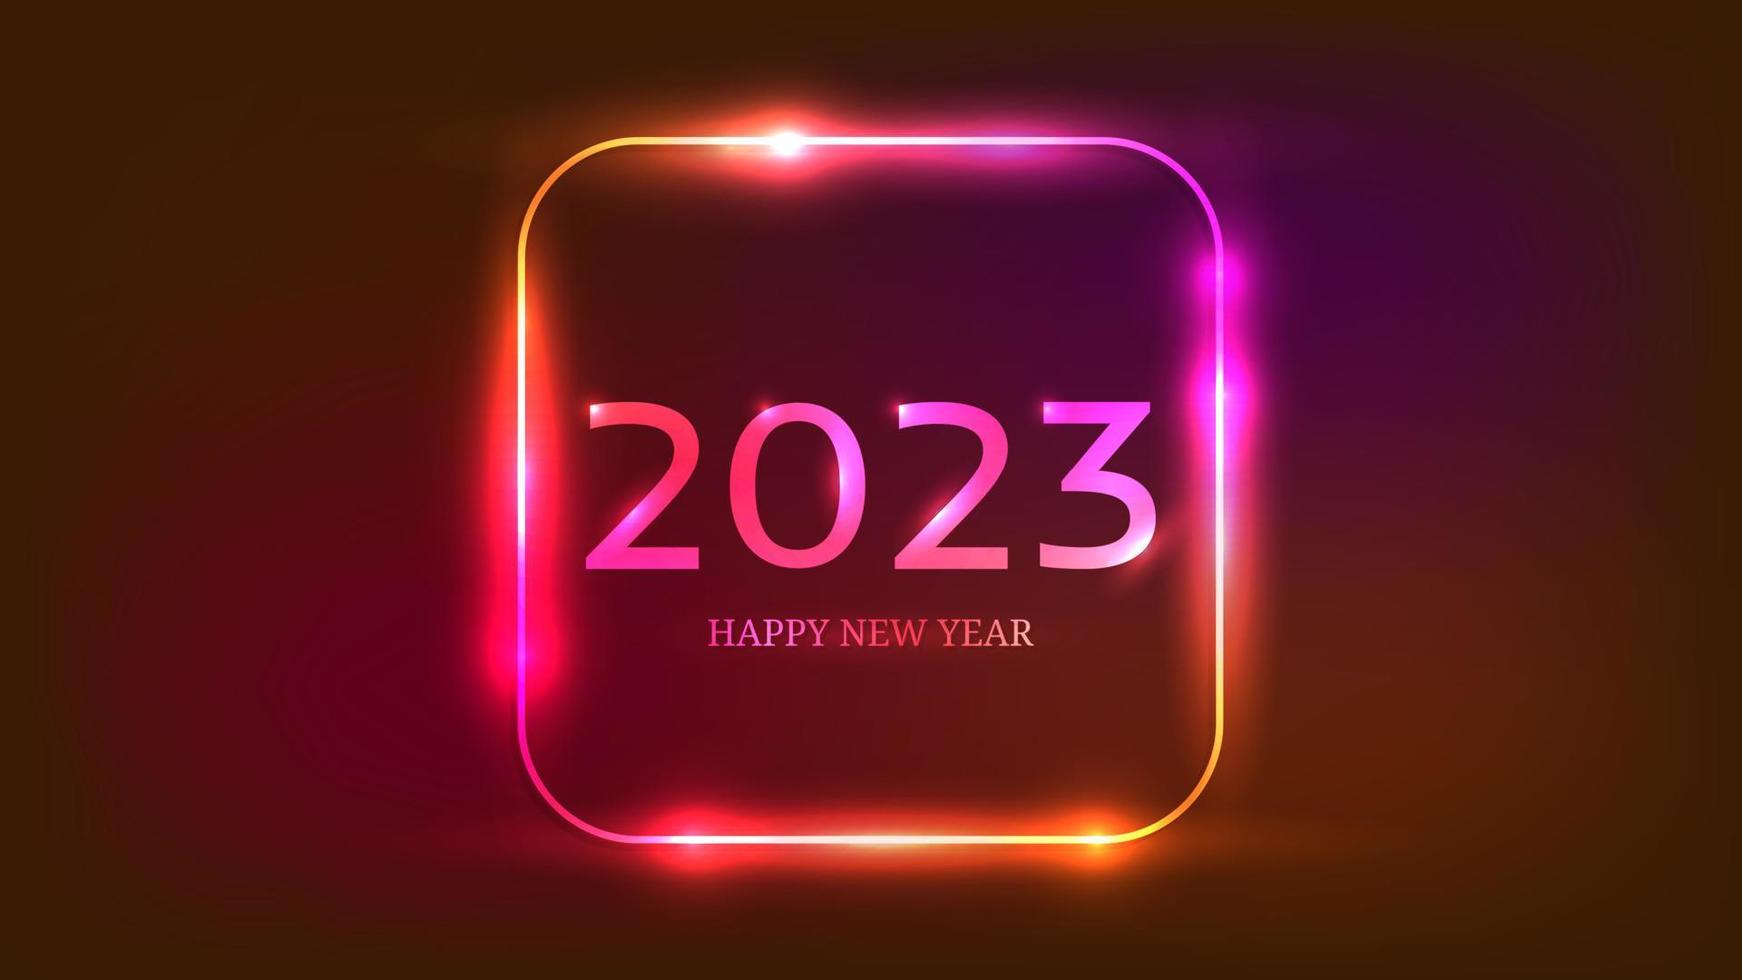 Bonne année 2023 fond néon. cadre carré arrondi au néon avec des effets brillants pour la carte de voeux, les dépliants ou les affiches de vacances de noël. illustration vectorielle vecteur